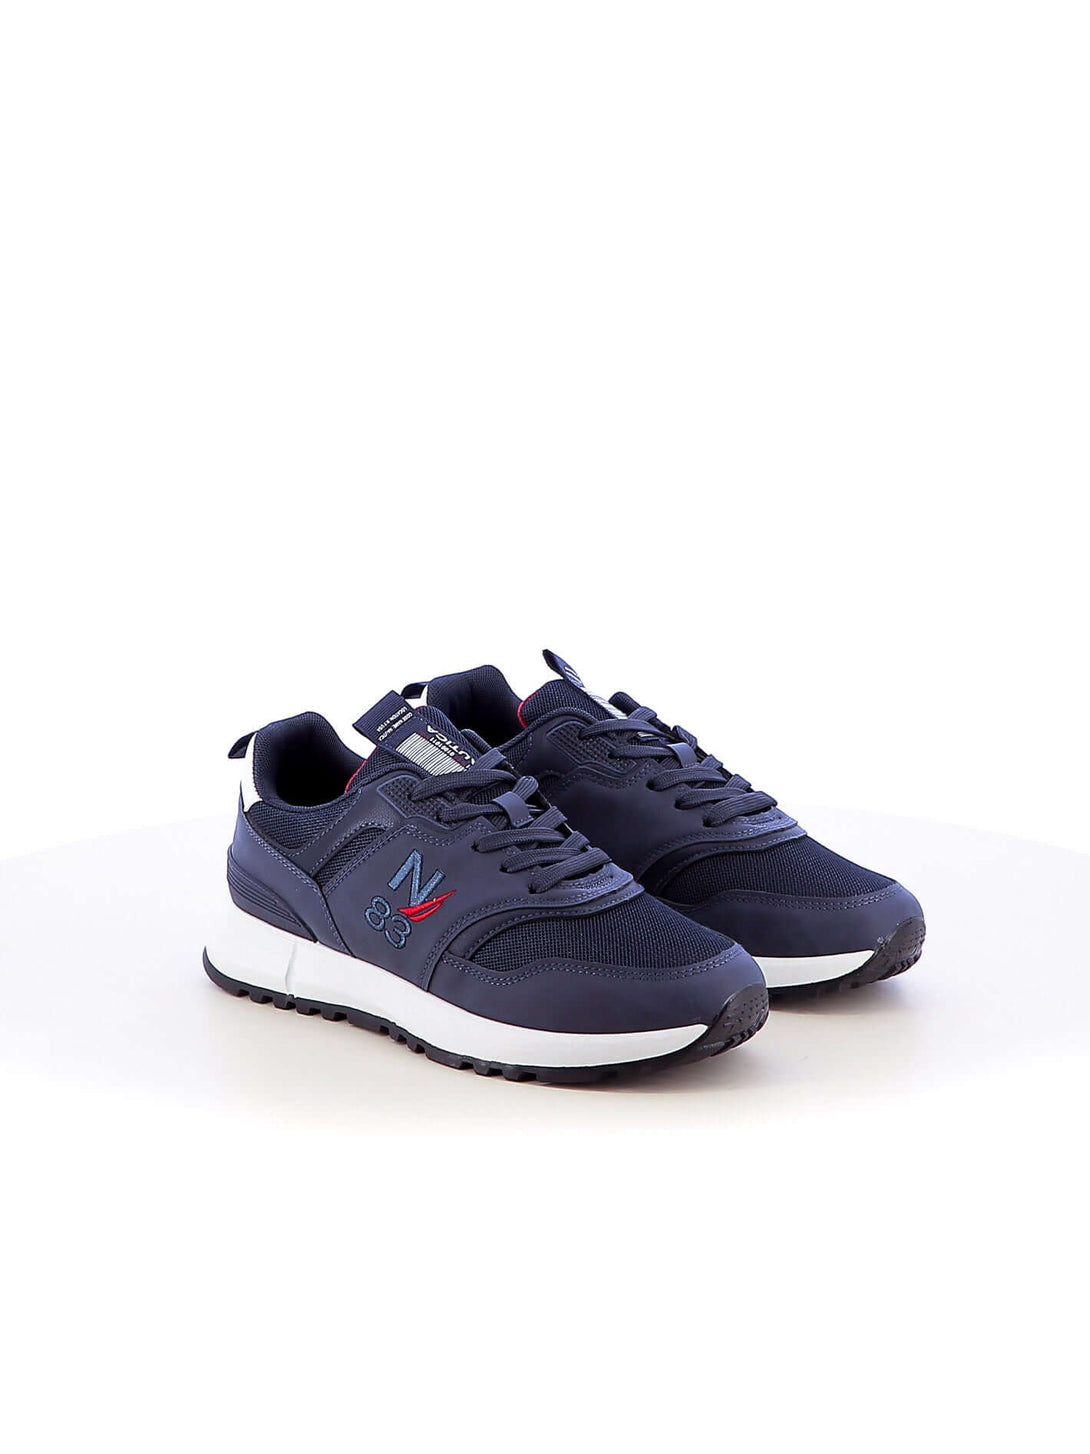 Sneakers stringate uomo NAUTICA NTM4160F03 blu | Costa Superstore